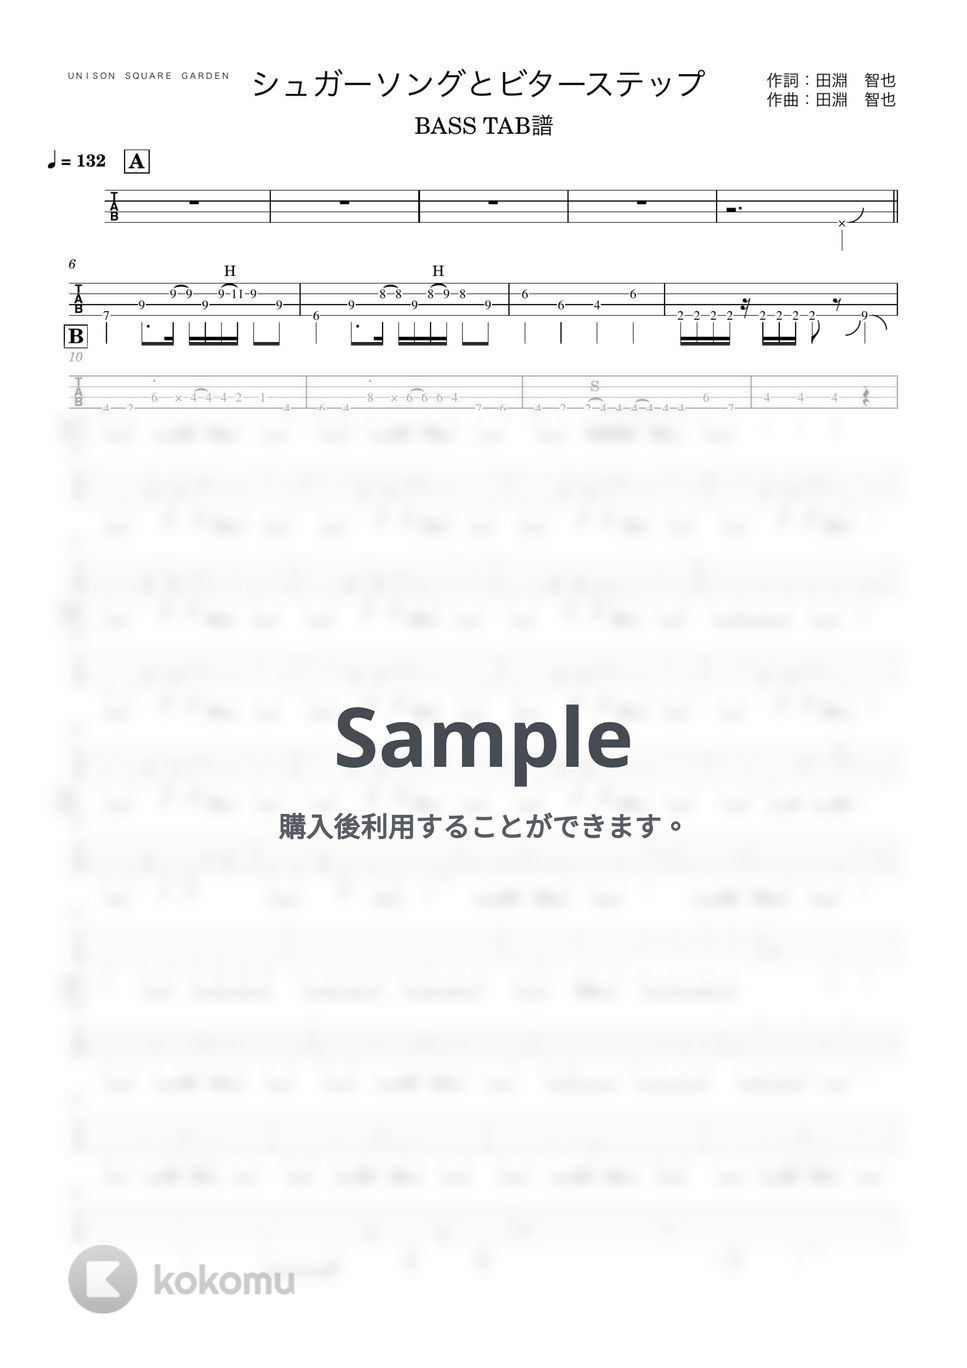 ＵＮＩＳＯＮ　ＳＱＵＡＲＥ　ＧＡＲＤＥＮ - シュガーソングとビターステップ (『ベースTAB譜』4弦ベース対応) by 箱譜屋